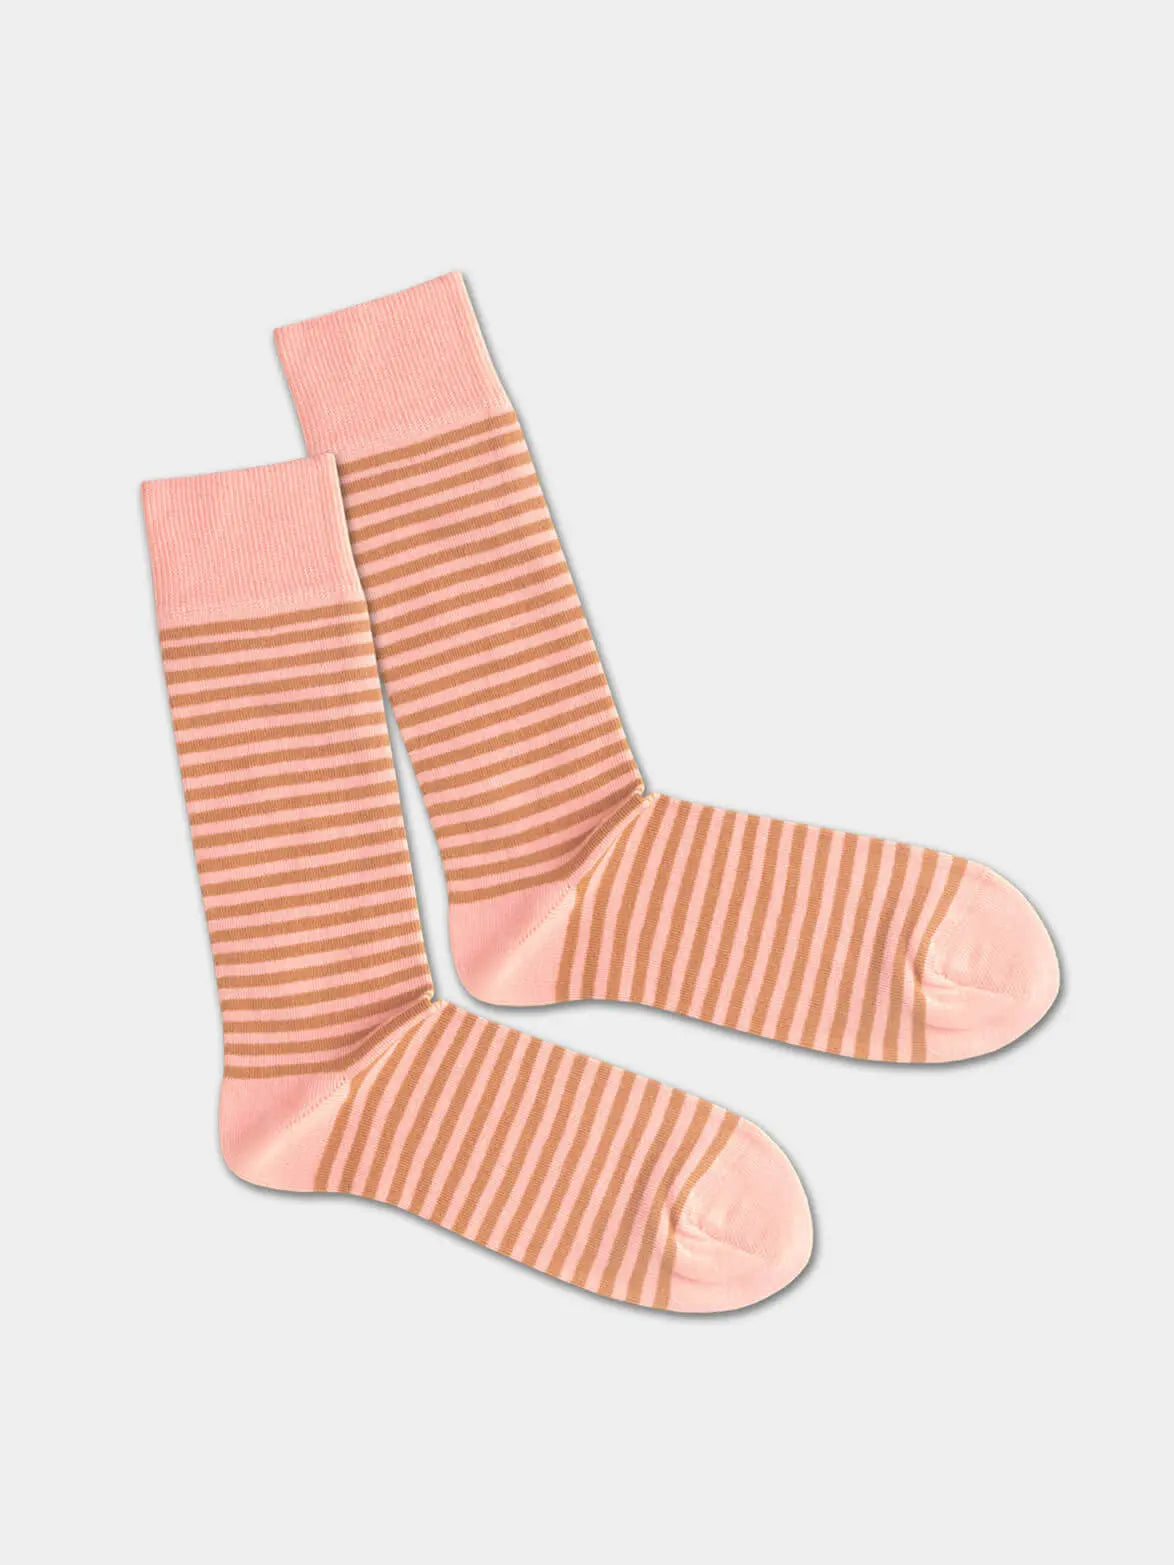 - Socken in Rosa mit Streifen Motiv/Muster von DillySocks